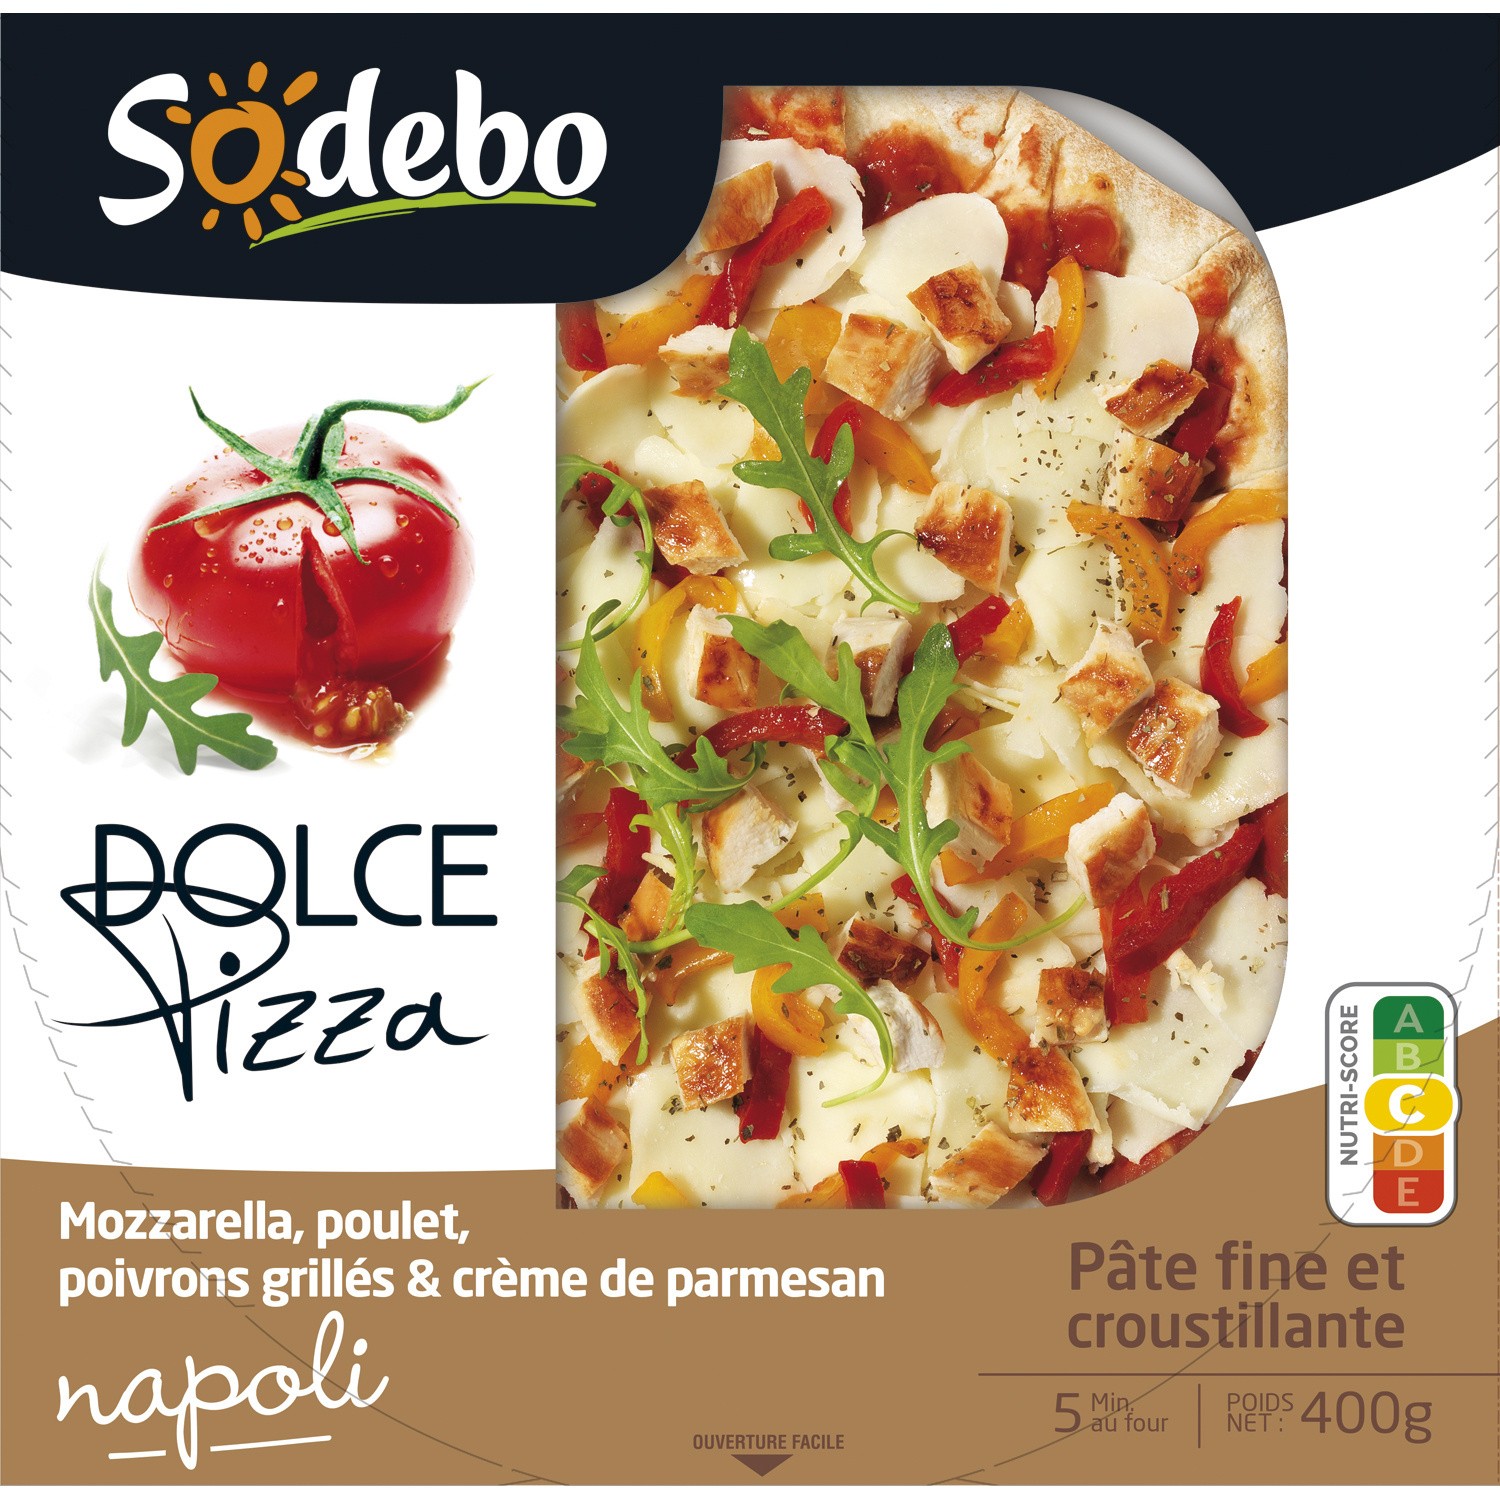 Pizza Dolce napoli (Mozzarella, poulet, poivrons grillés & parmesan)